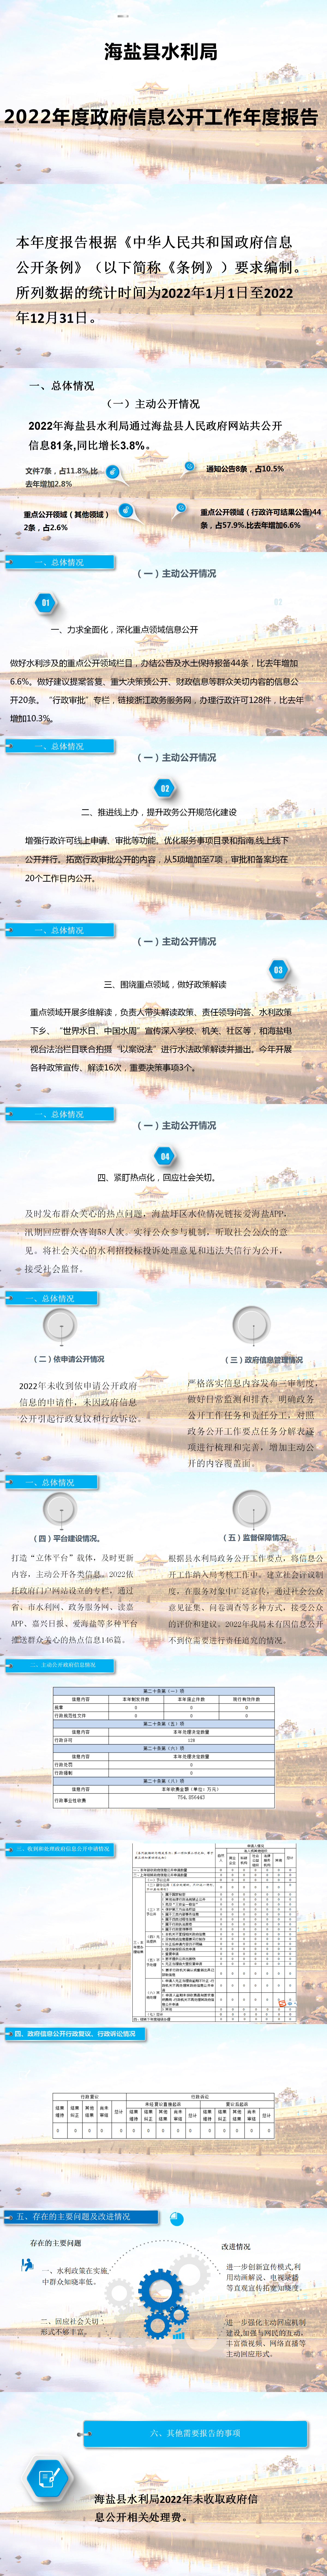 海盐县水利局2022年度政府信息公开工作年度报告(1).png